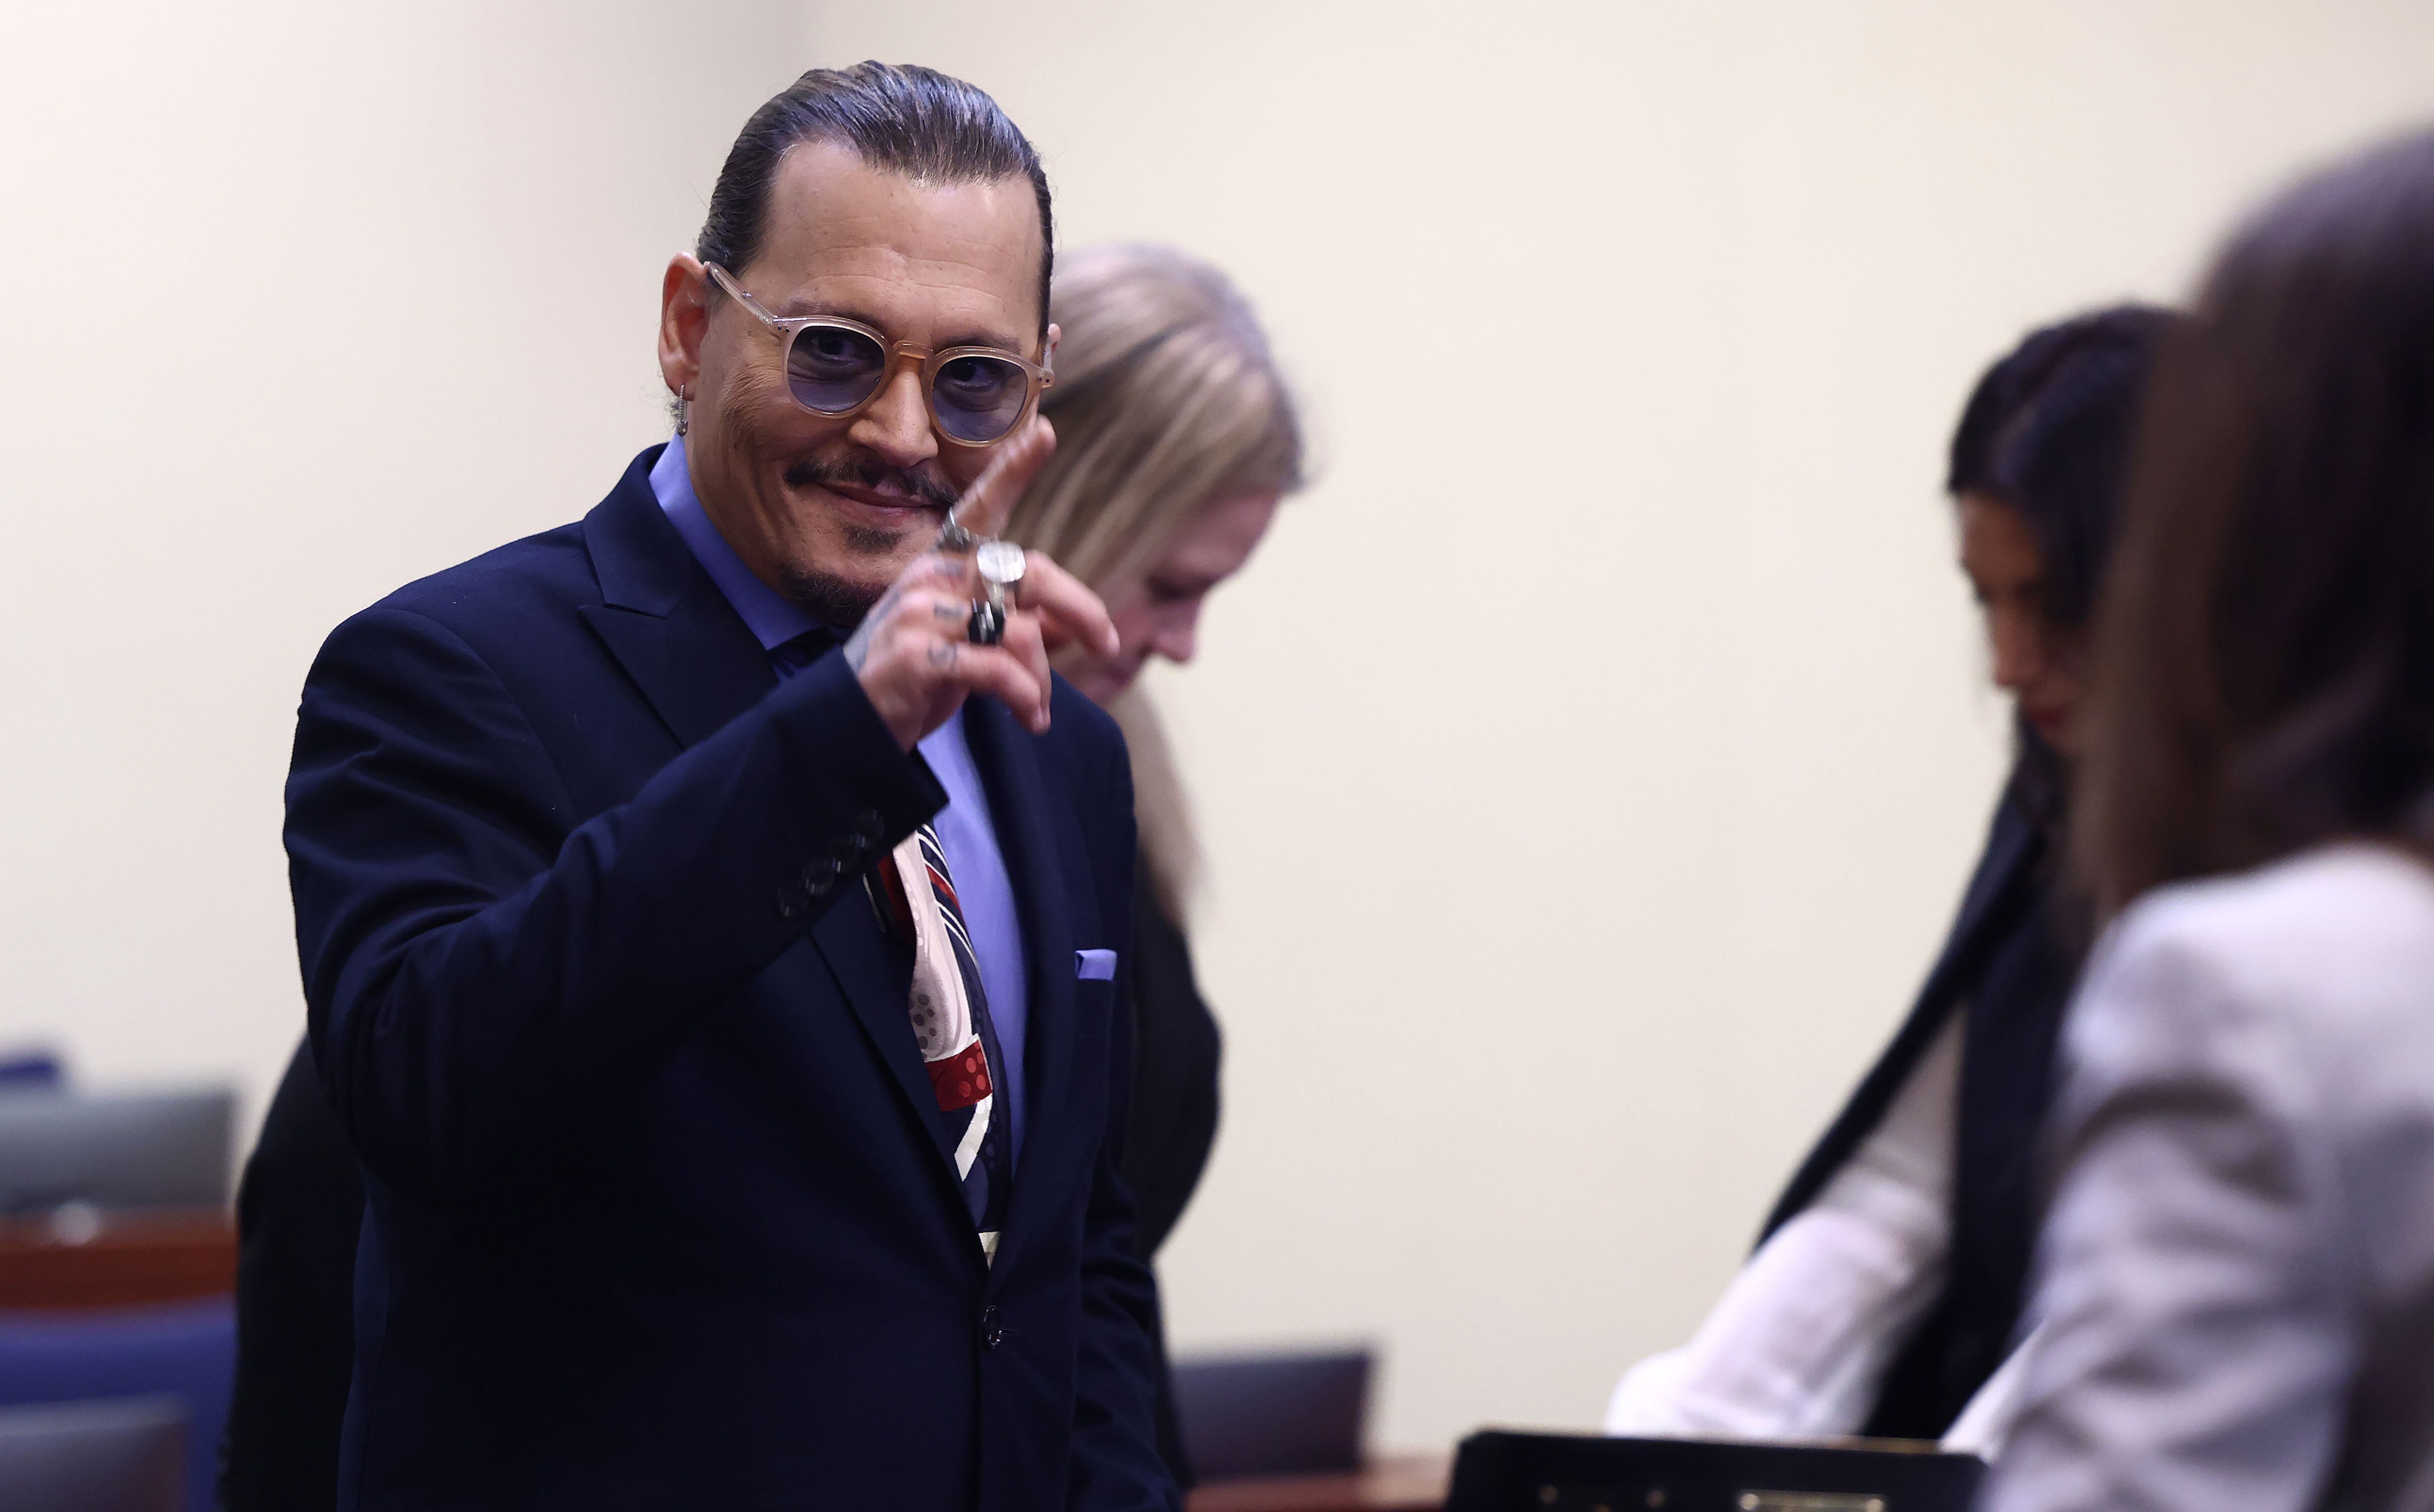 El actor estadounidense Johnny Depp demandó por difamación por 50 millones de dólares a su exesposa Amber Heard. EFE/EPA/JIM LO SCALZO